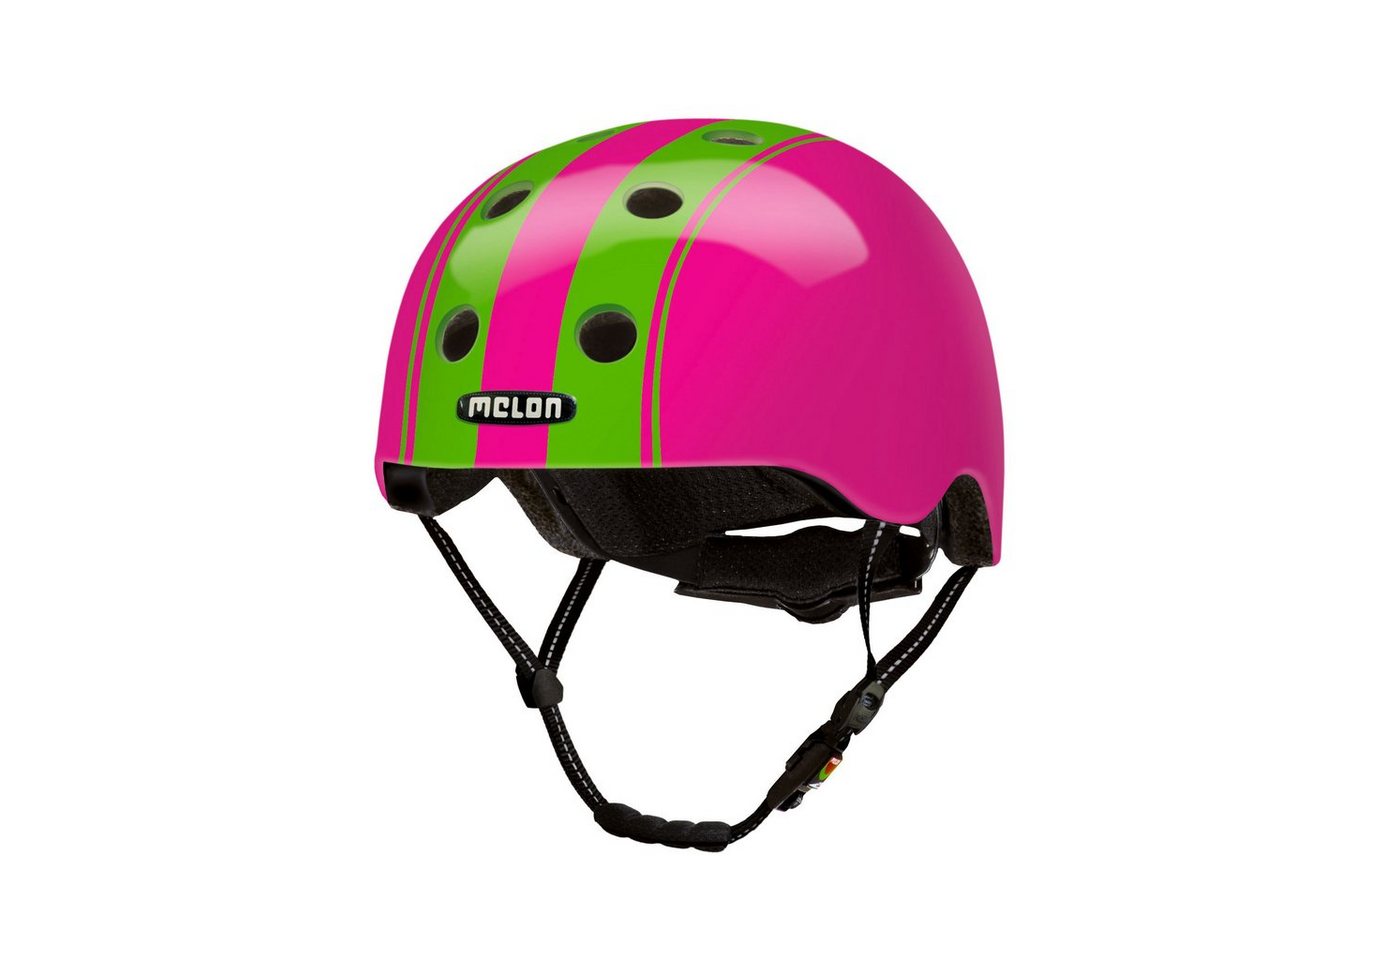 Melon Fahrradhelm Double Green Pink, super leicht, Magnetverschluss, größenverstellbar, mehr als 50 Designs von Melon